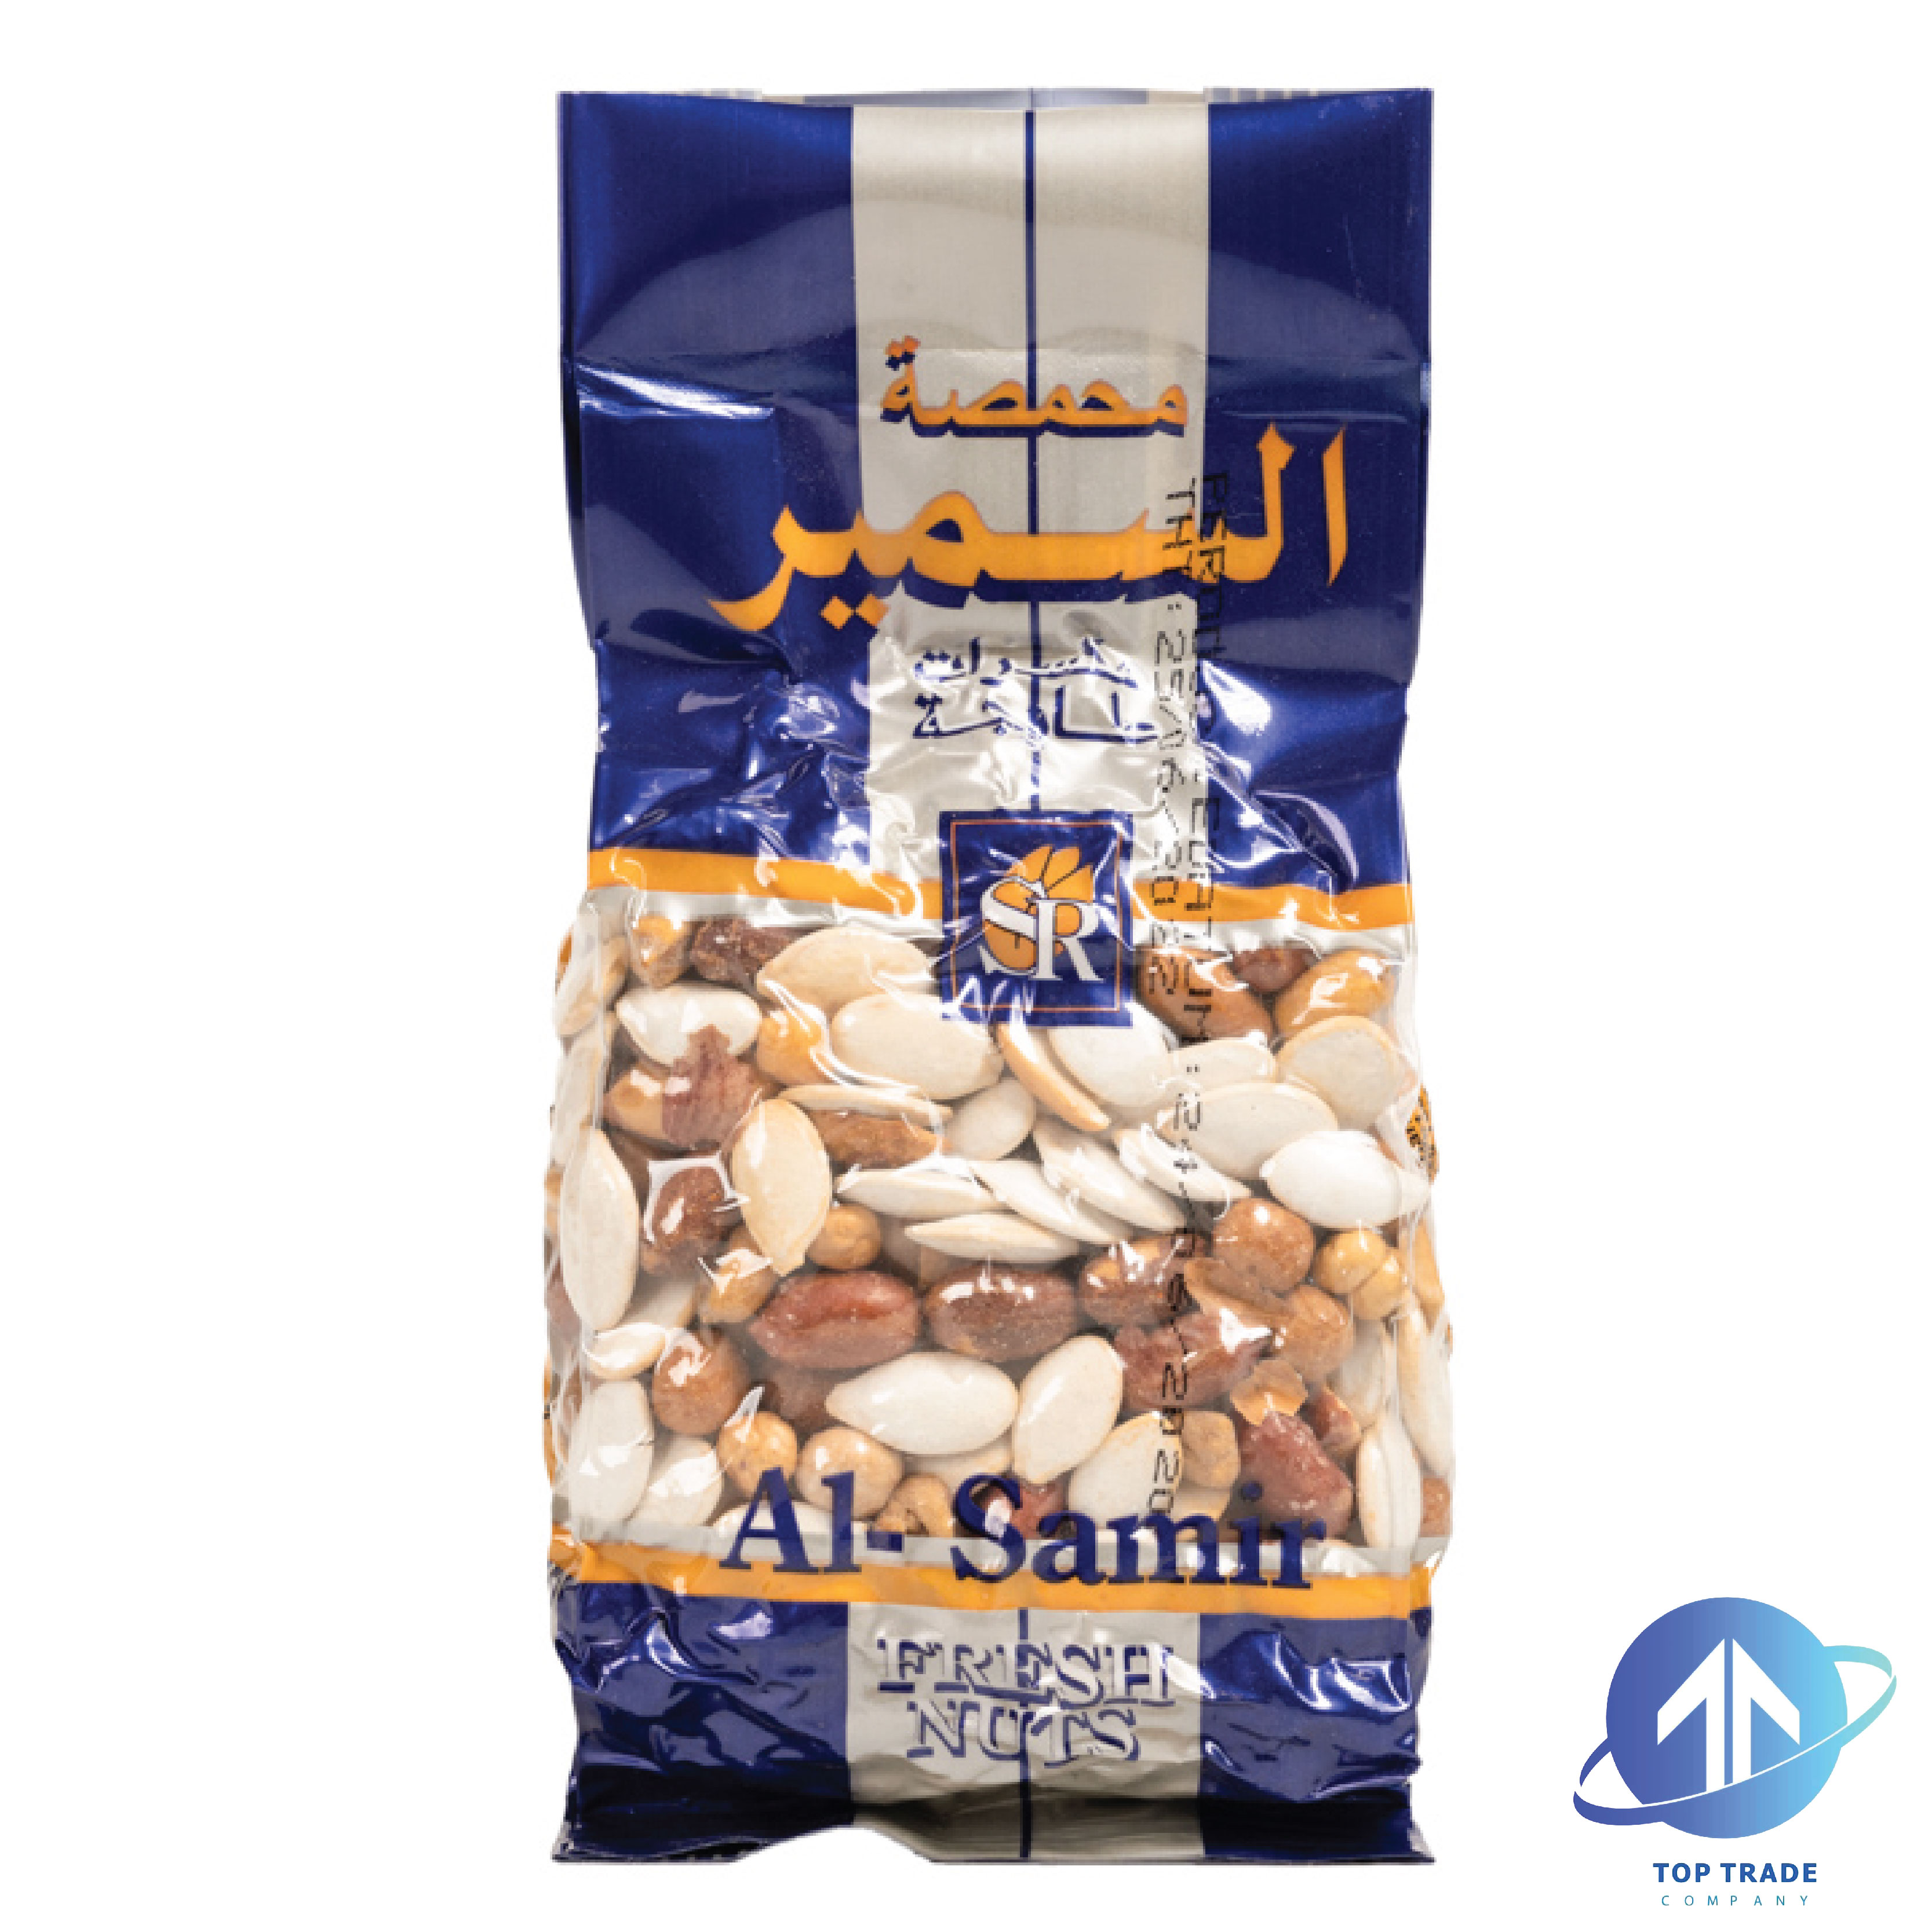 Al Samir Mixed Seeds, (Blue Bag) 300gr